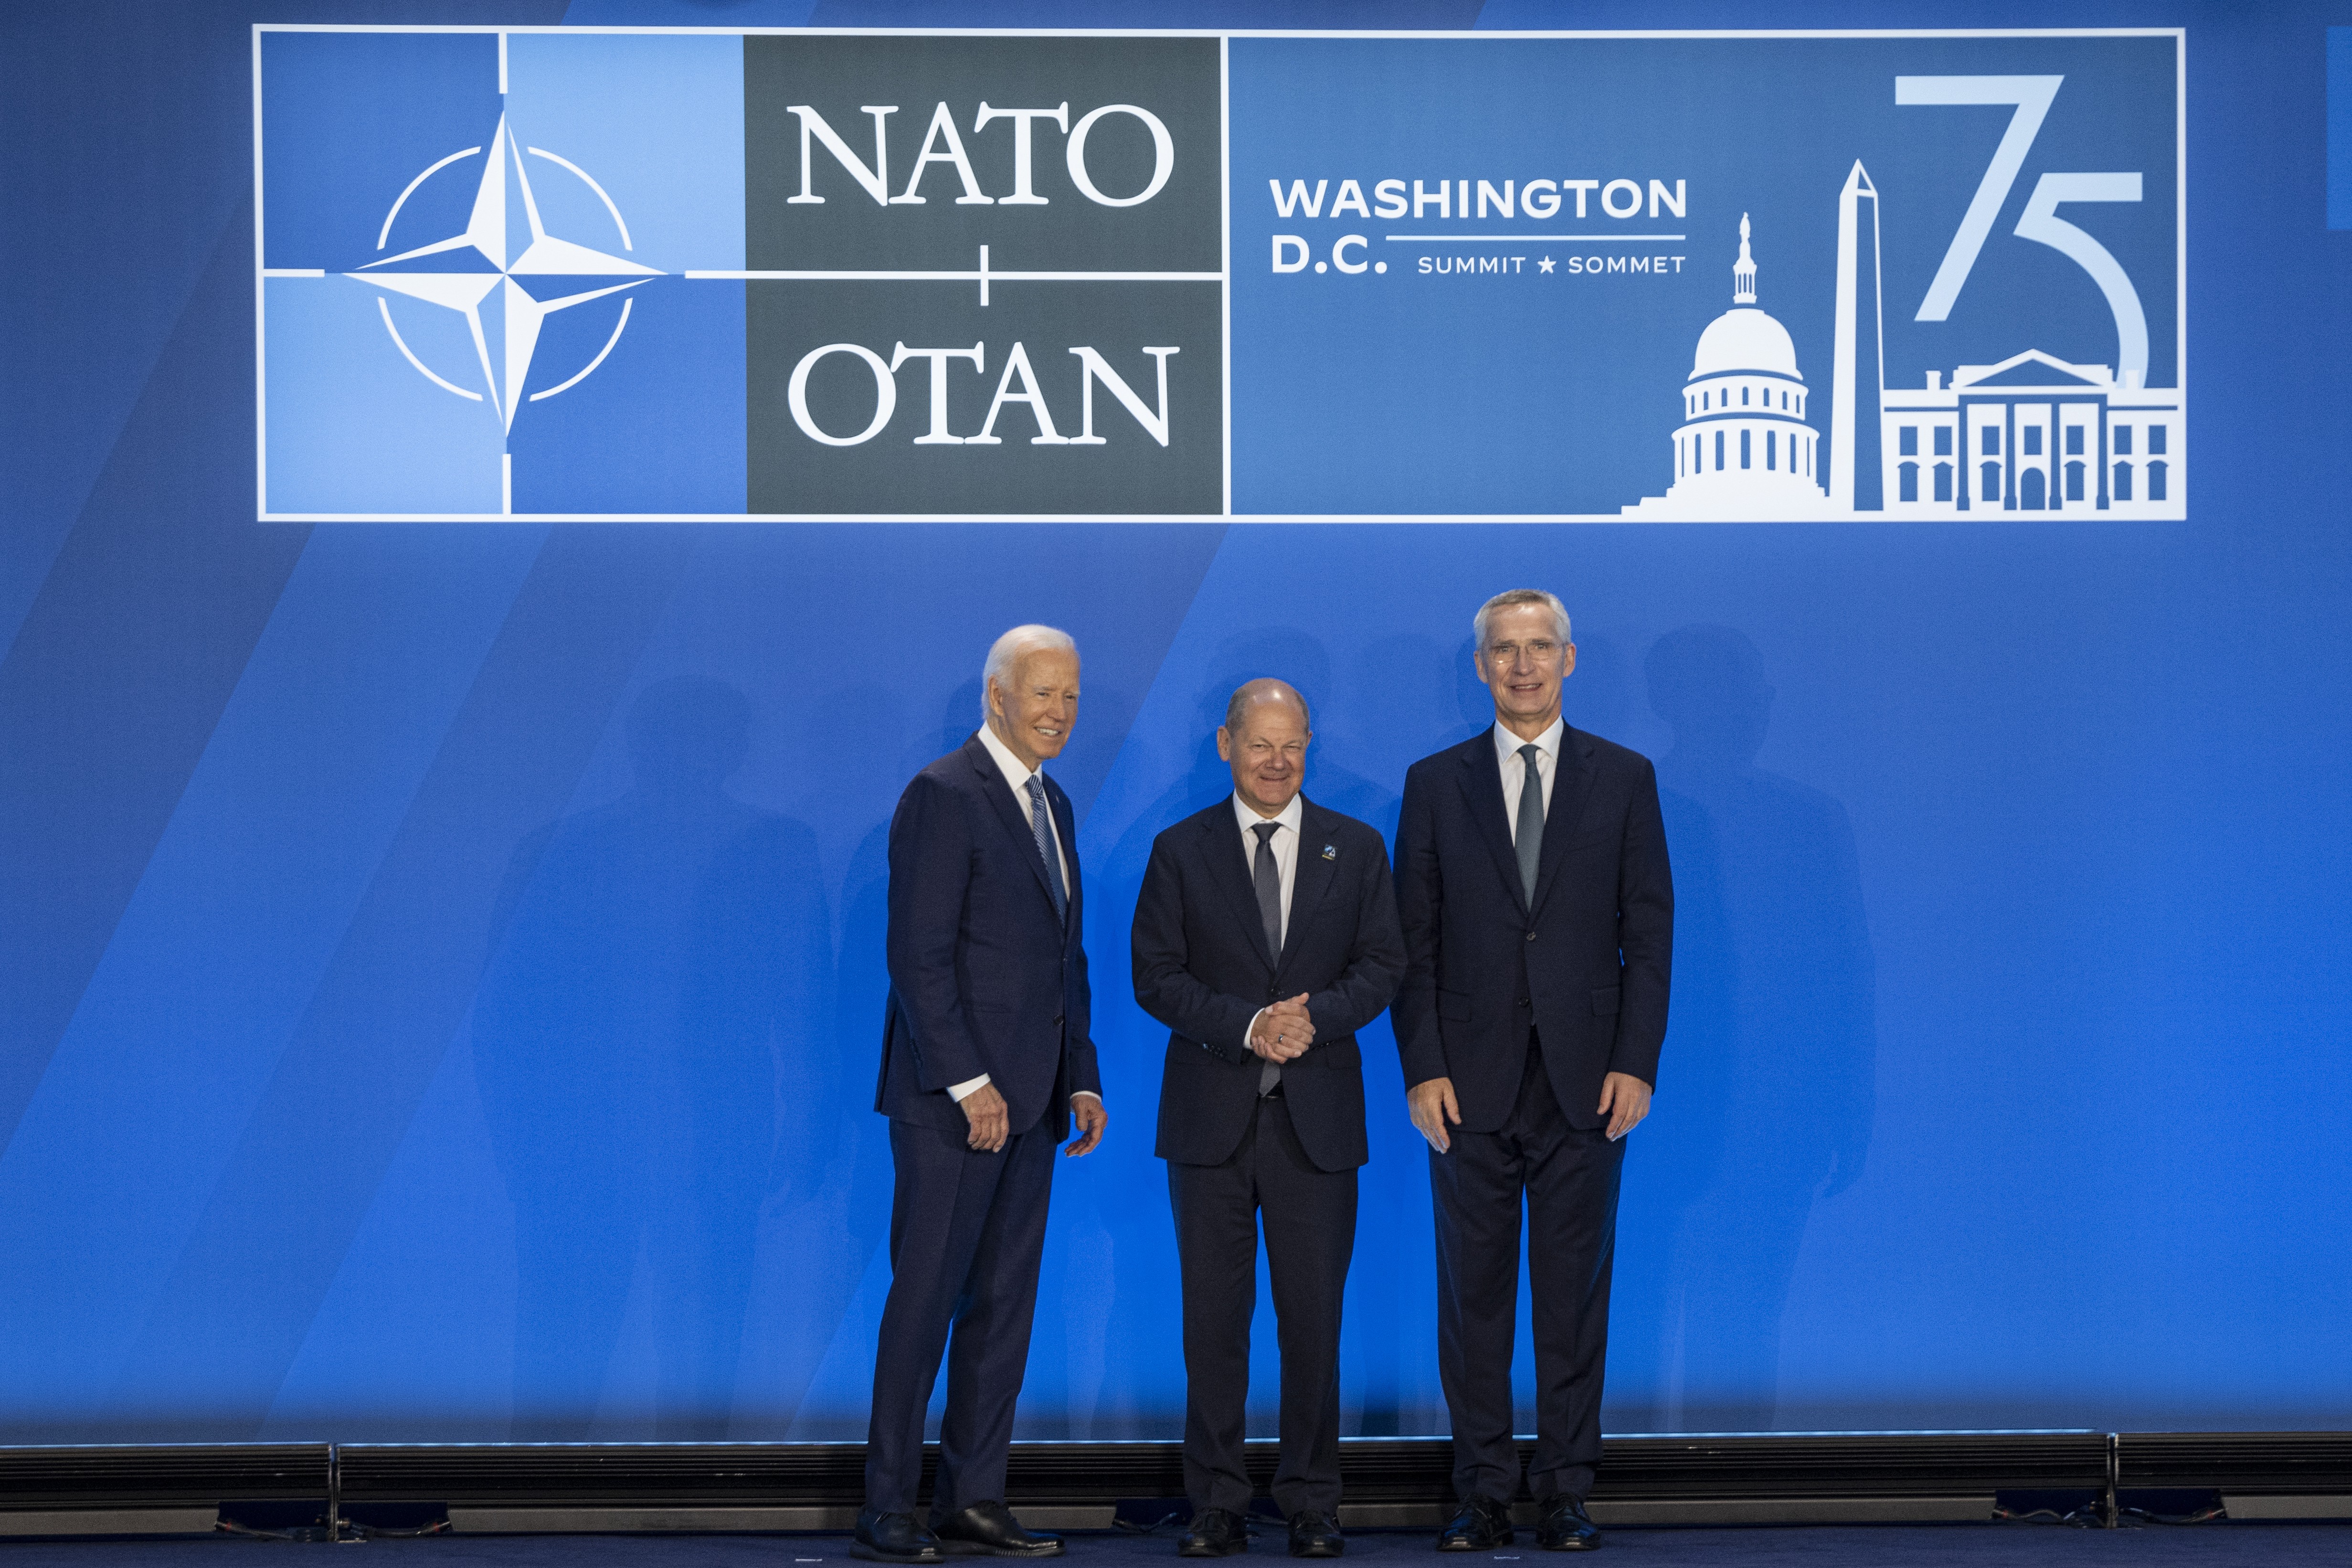 NATO zirvesinde bir arata gelen ABD Başkanı Joe Biden, Almanya Başbakanı Olaf Scholz, NATO Genel Sekreteri Jens Stoltenberg 